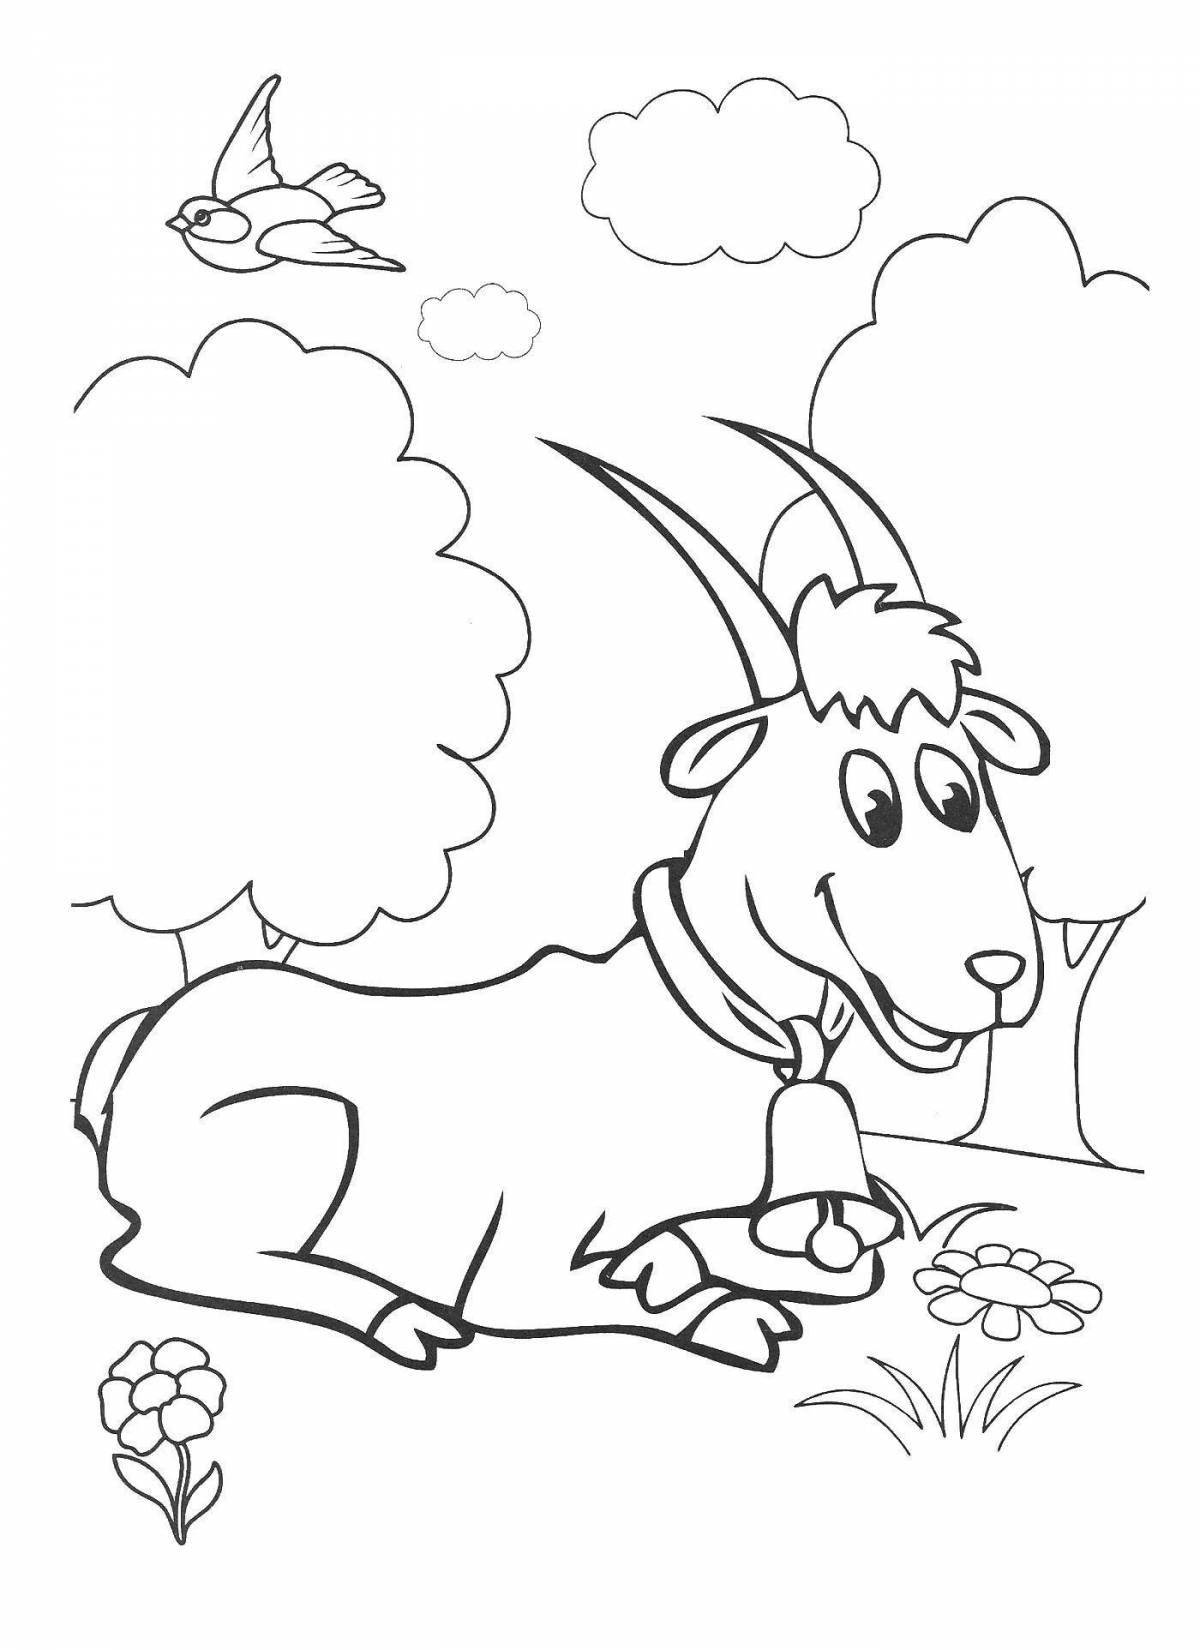 Cute goat dereza coloring book